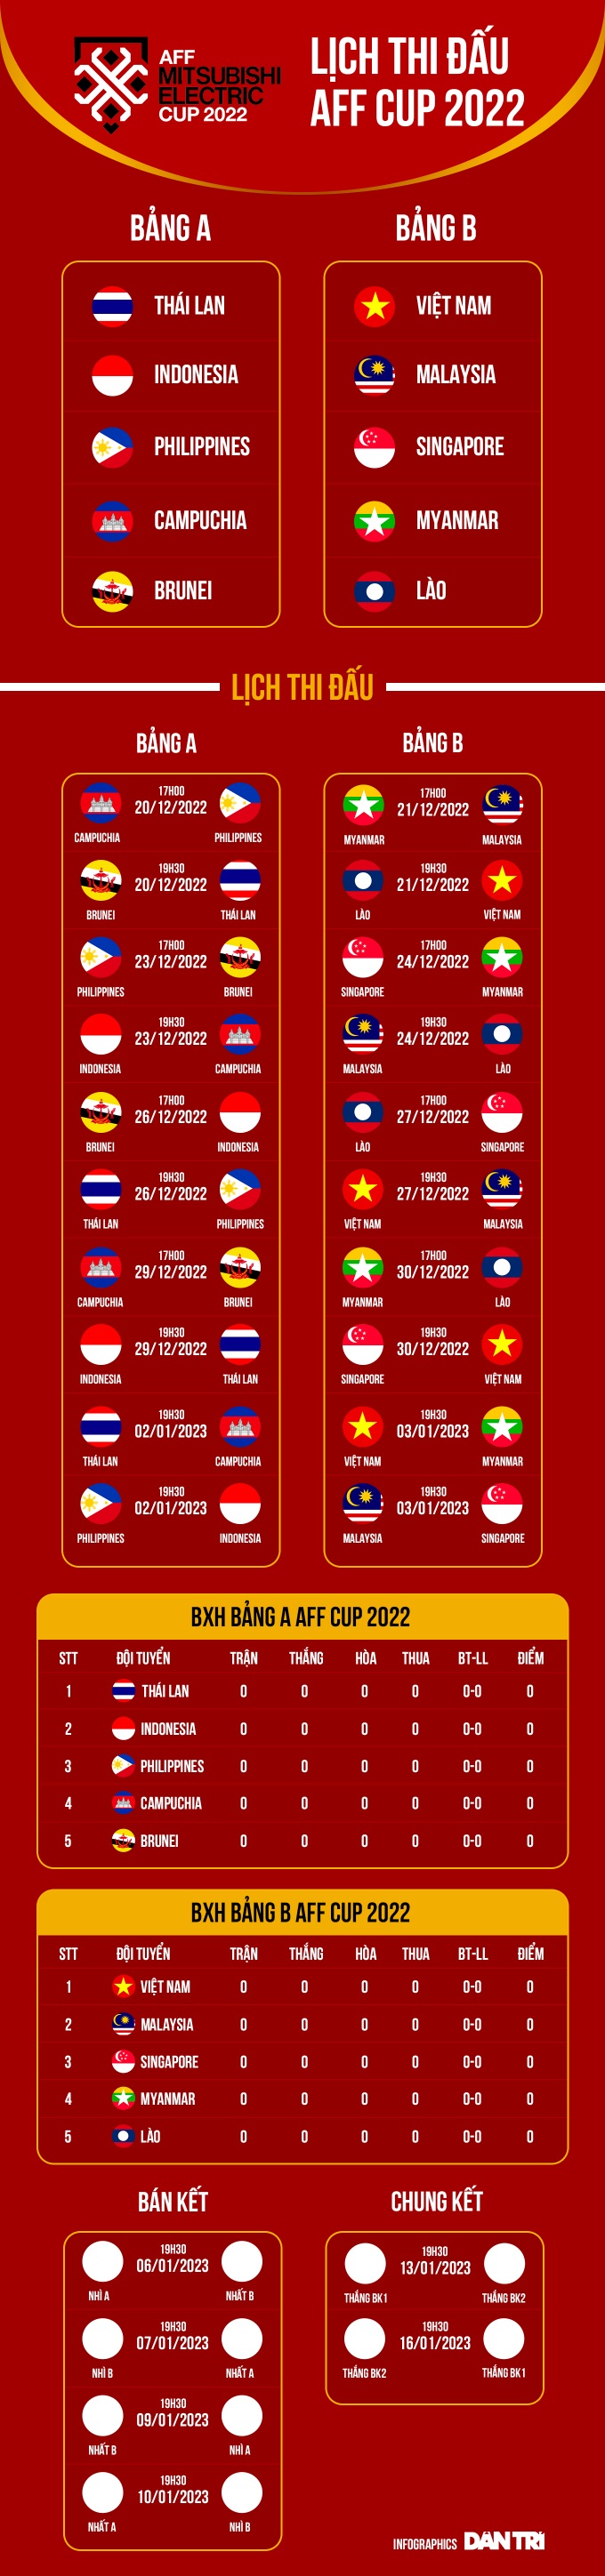 Lịch thi đấu AFF Cup 2022, danh sách đội tuyển Việt Nam - Ảnh 3.